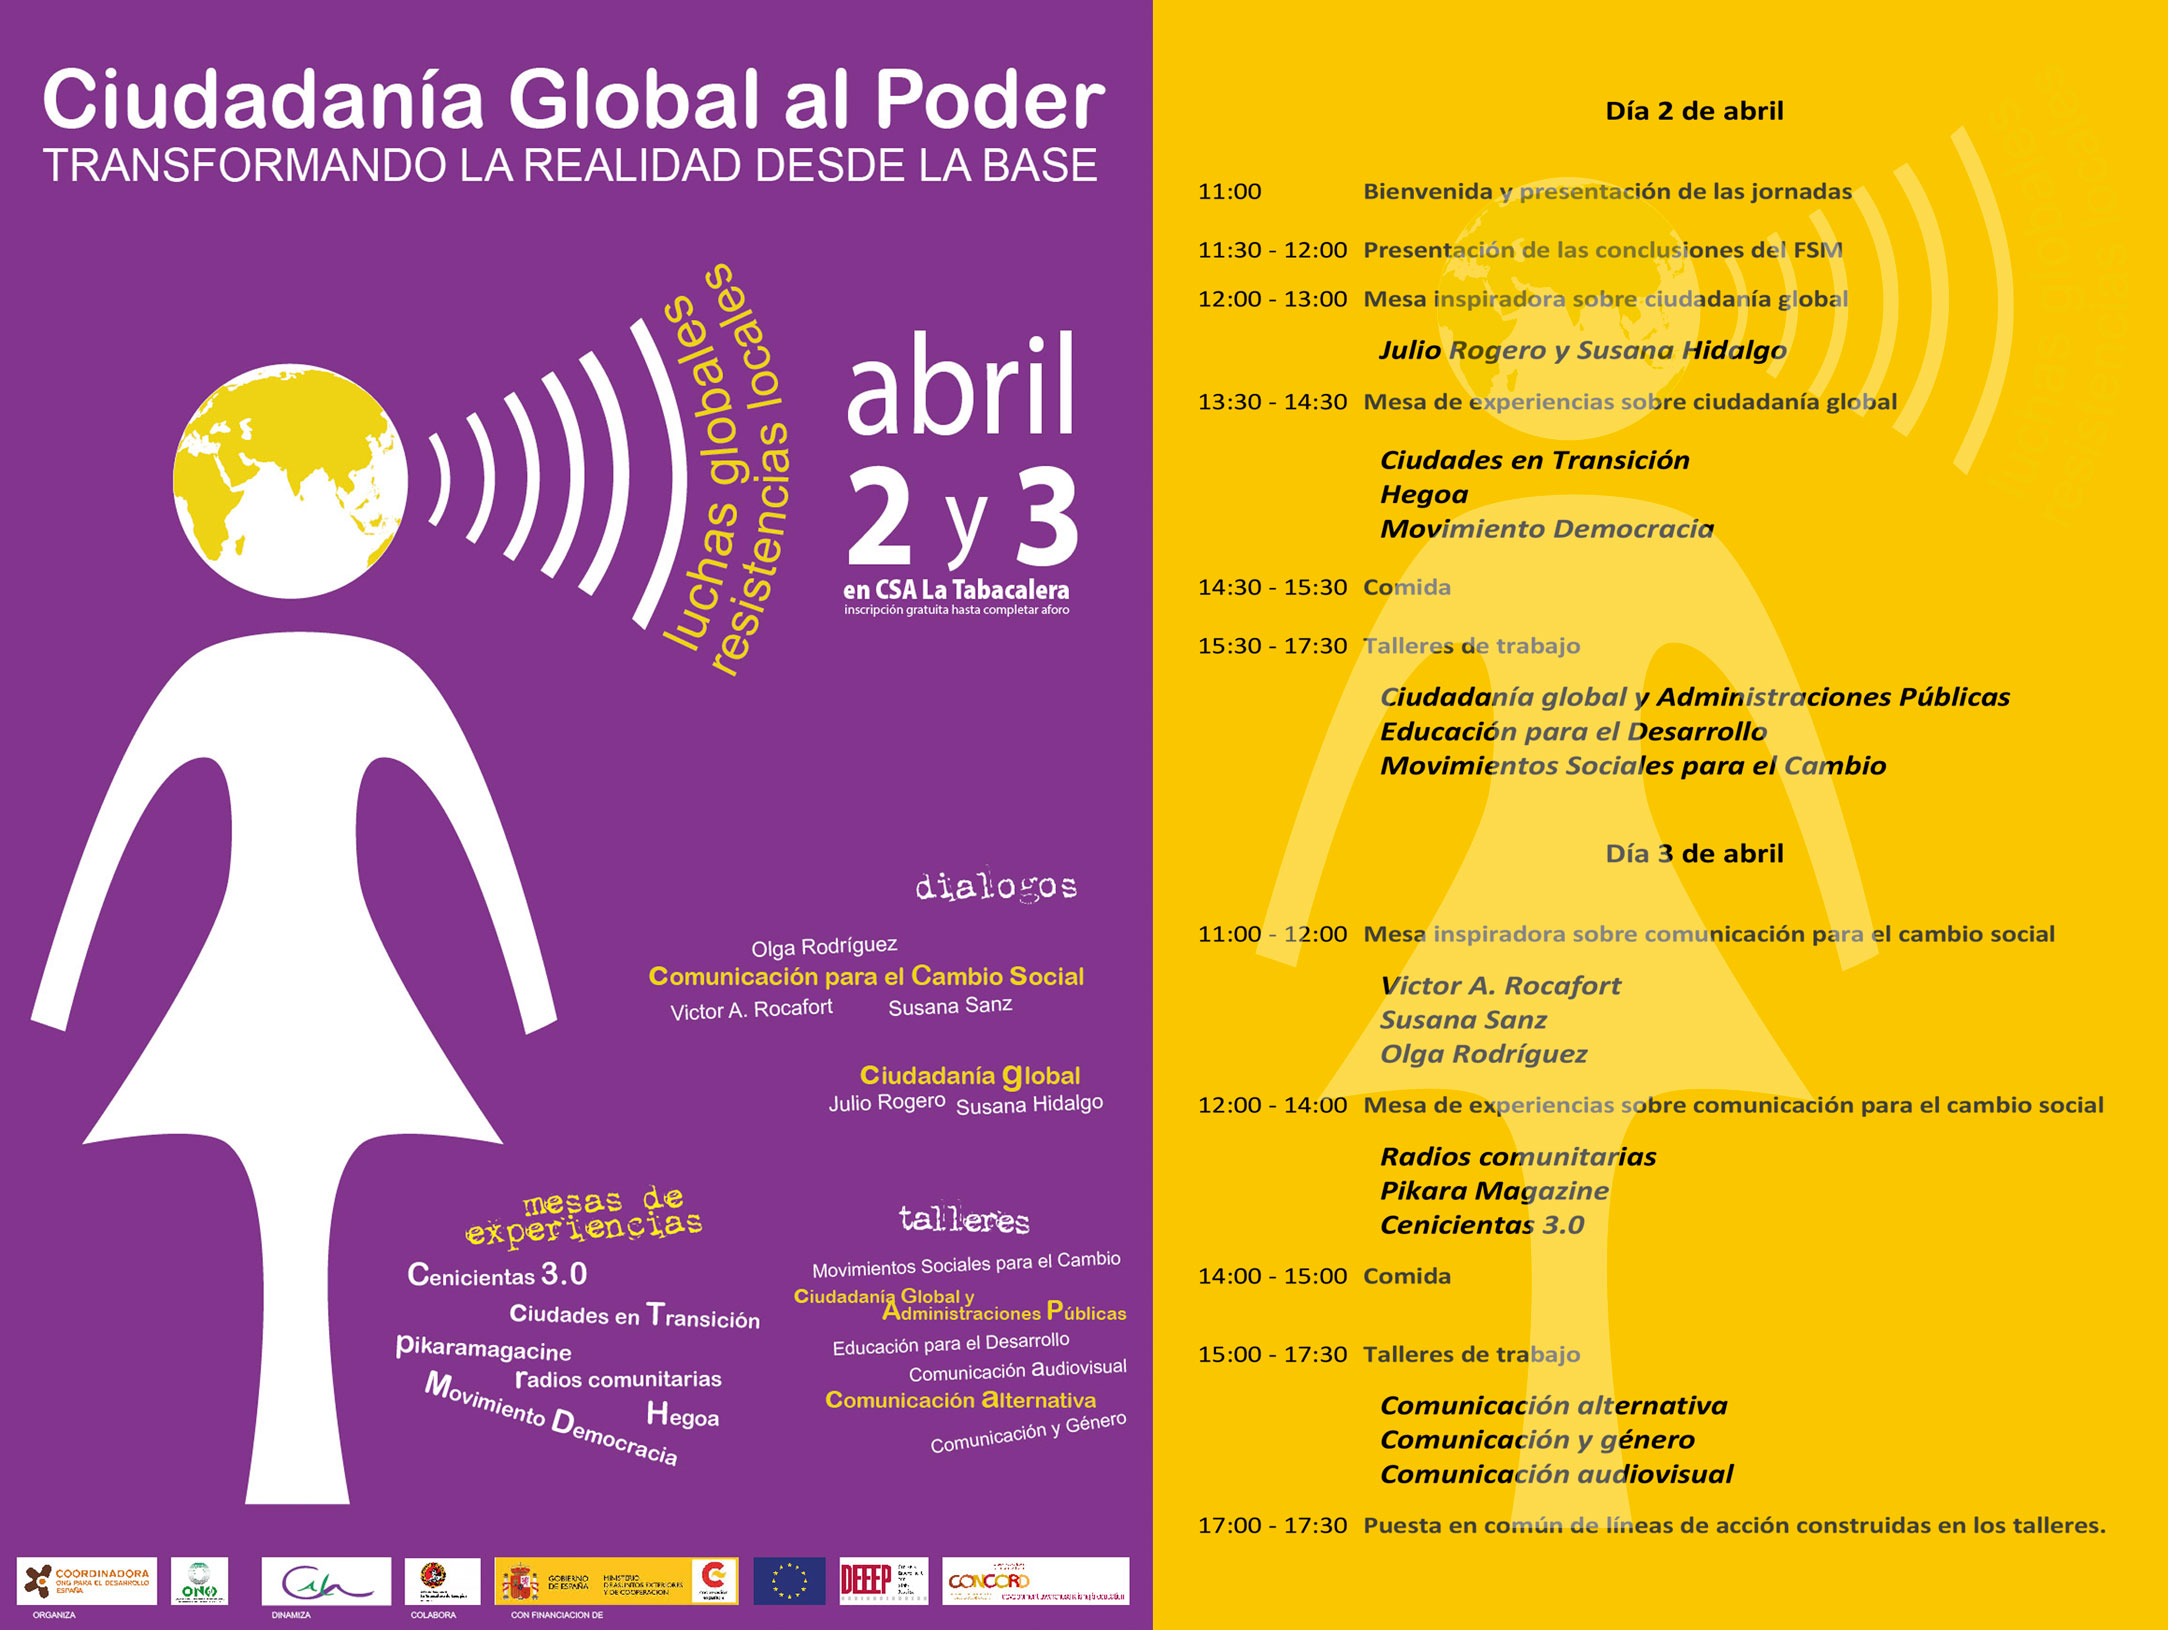 Cartel de las jornadas Ciudadanía al Poder. Los días 2 y 3 de abril en La Tabacalera, Madrid.